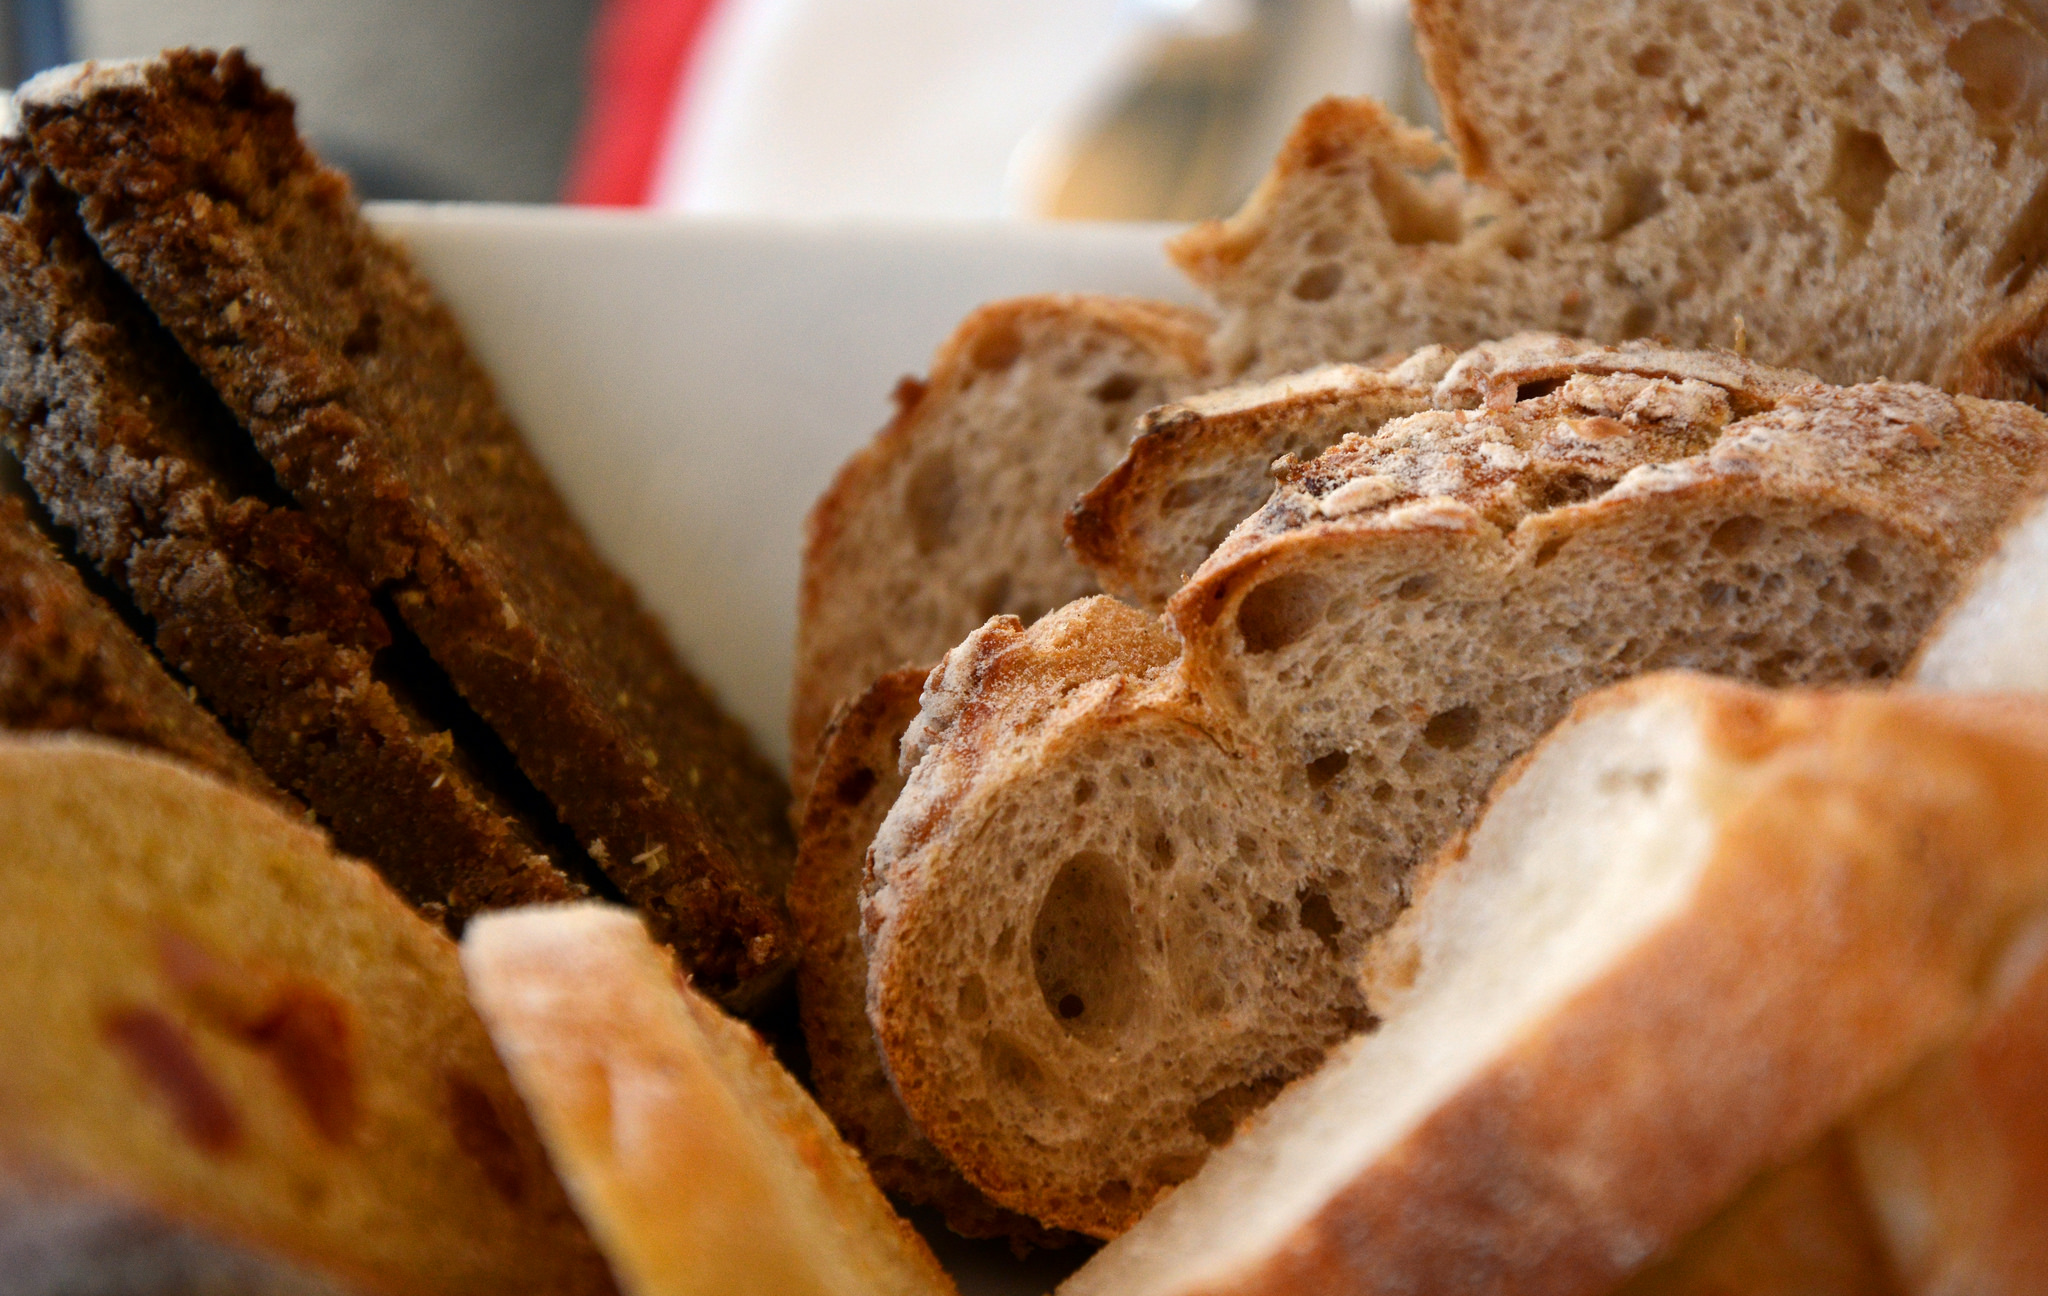 Tout est prétexte à dégustation au Portugal, jusqu'au pain ! Crédit photo @Pug Girl - Flickr